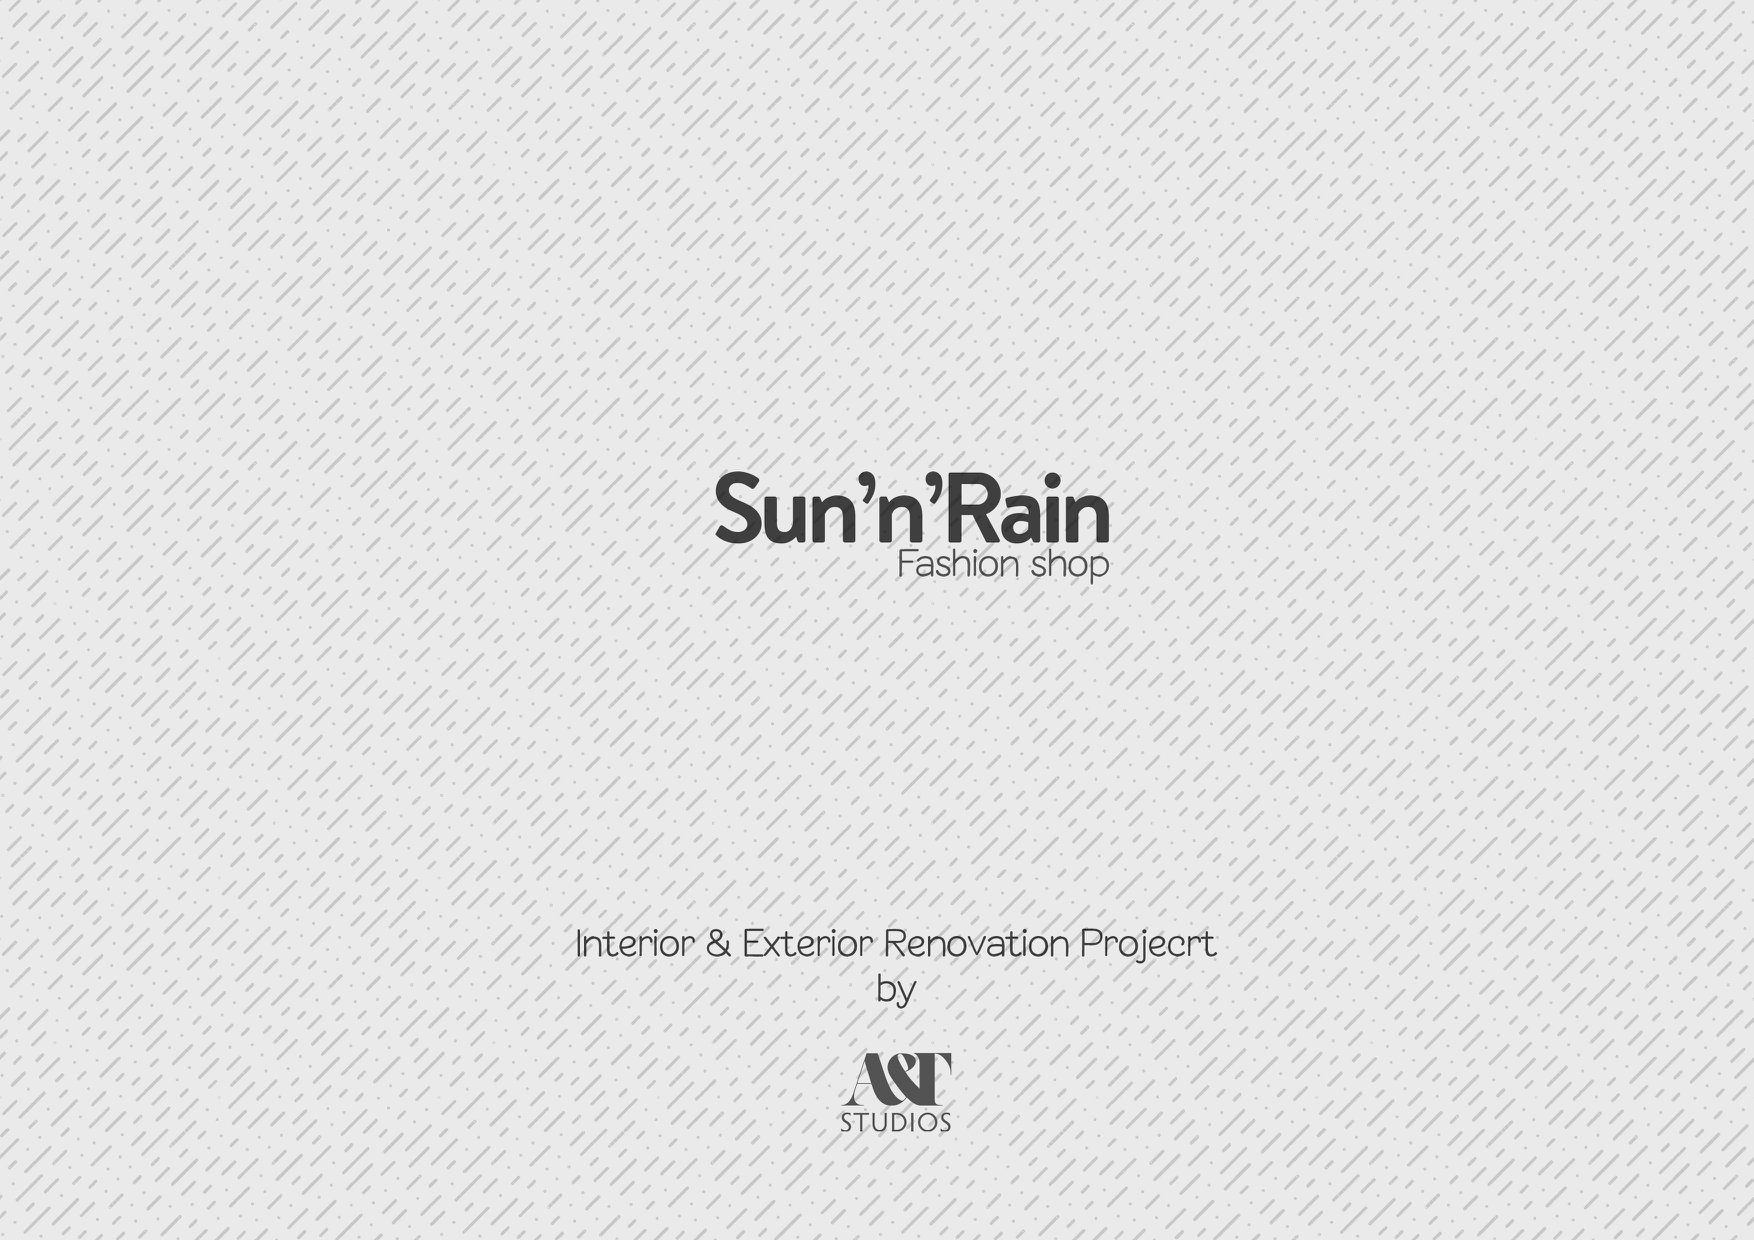 Thiết kế Shop tại Bình Định Sun'n'Rain Shop 1591670865 0